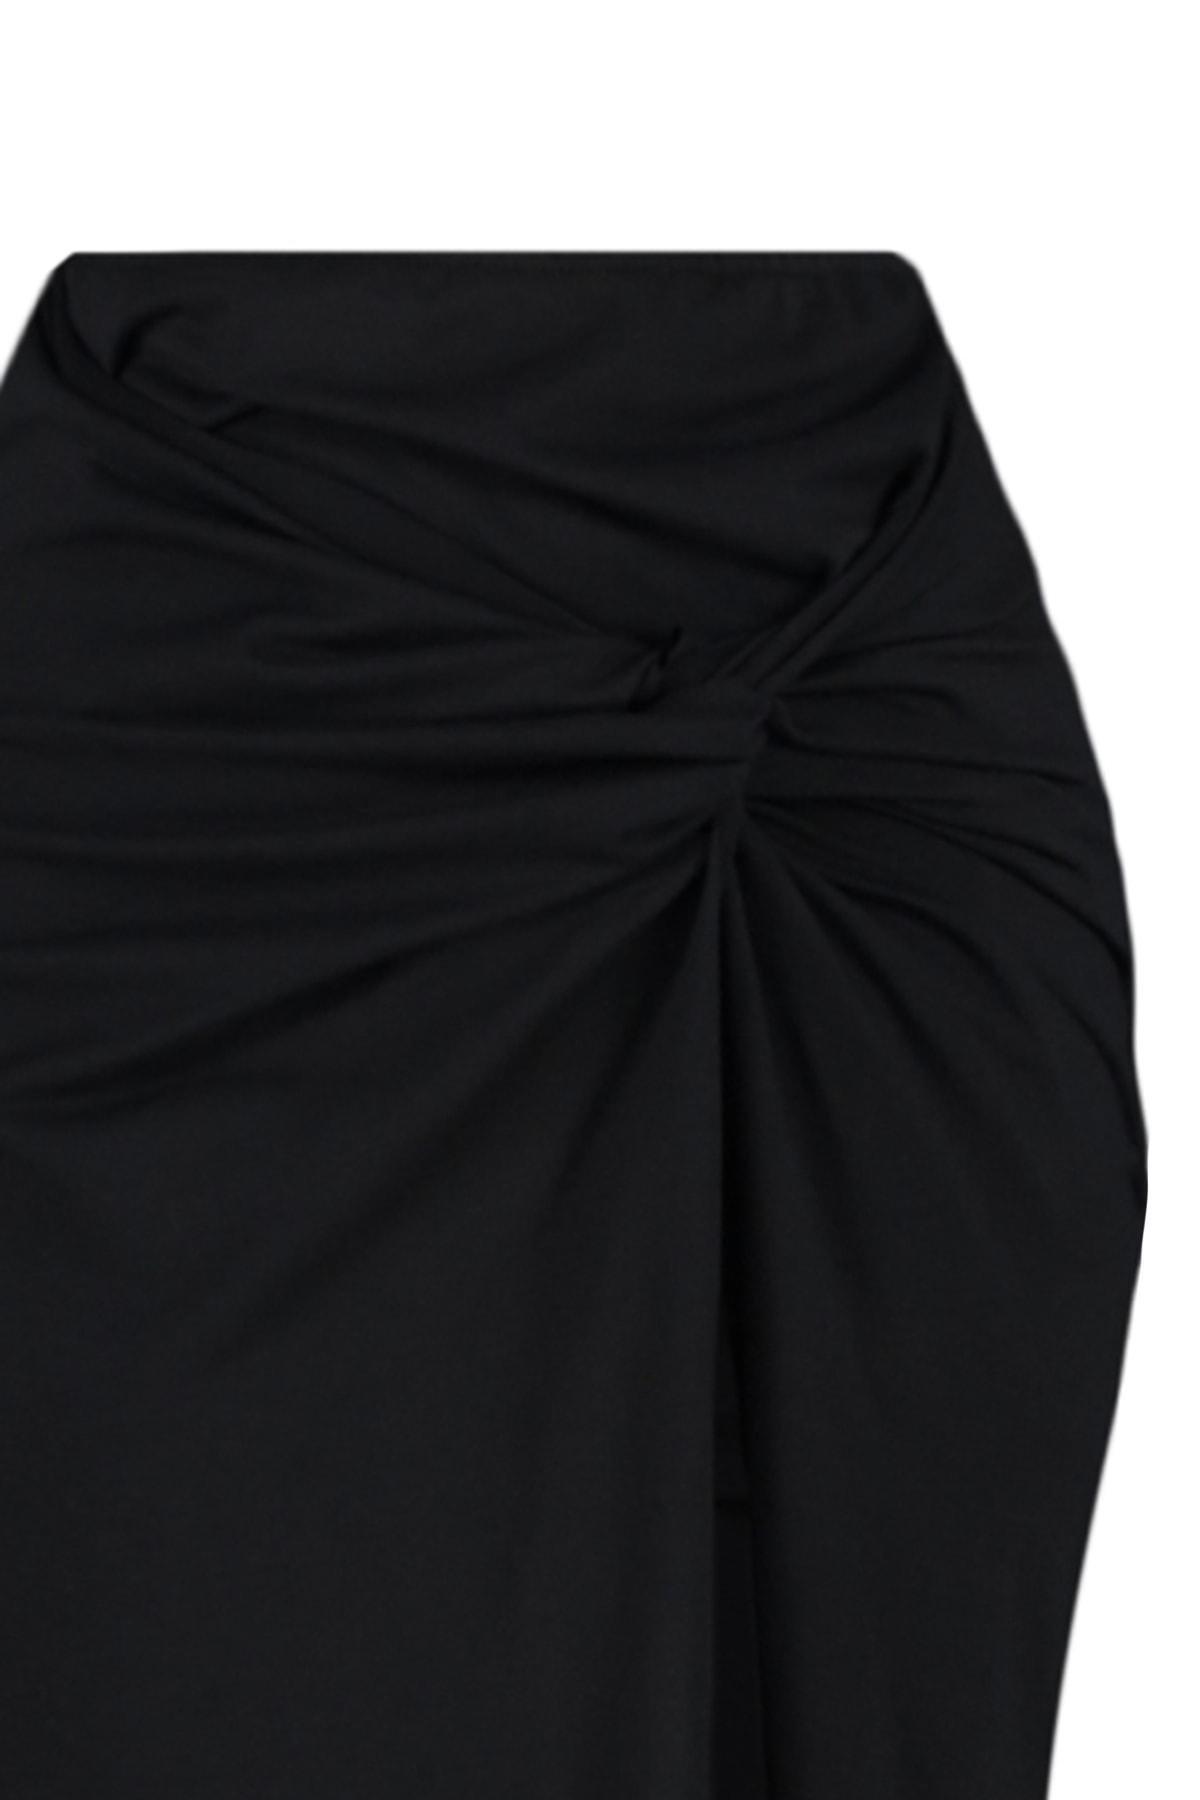 Trendyol - Black Fringes Detailed Maxi Skirt